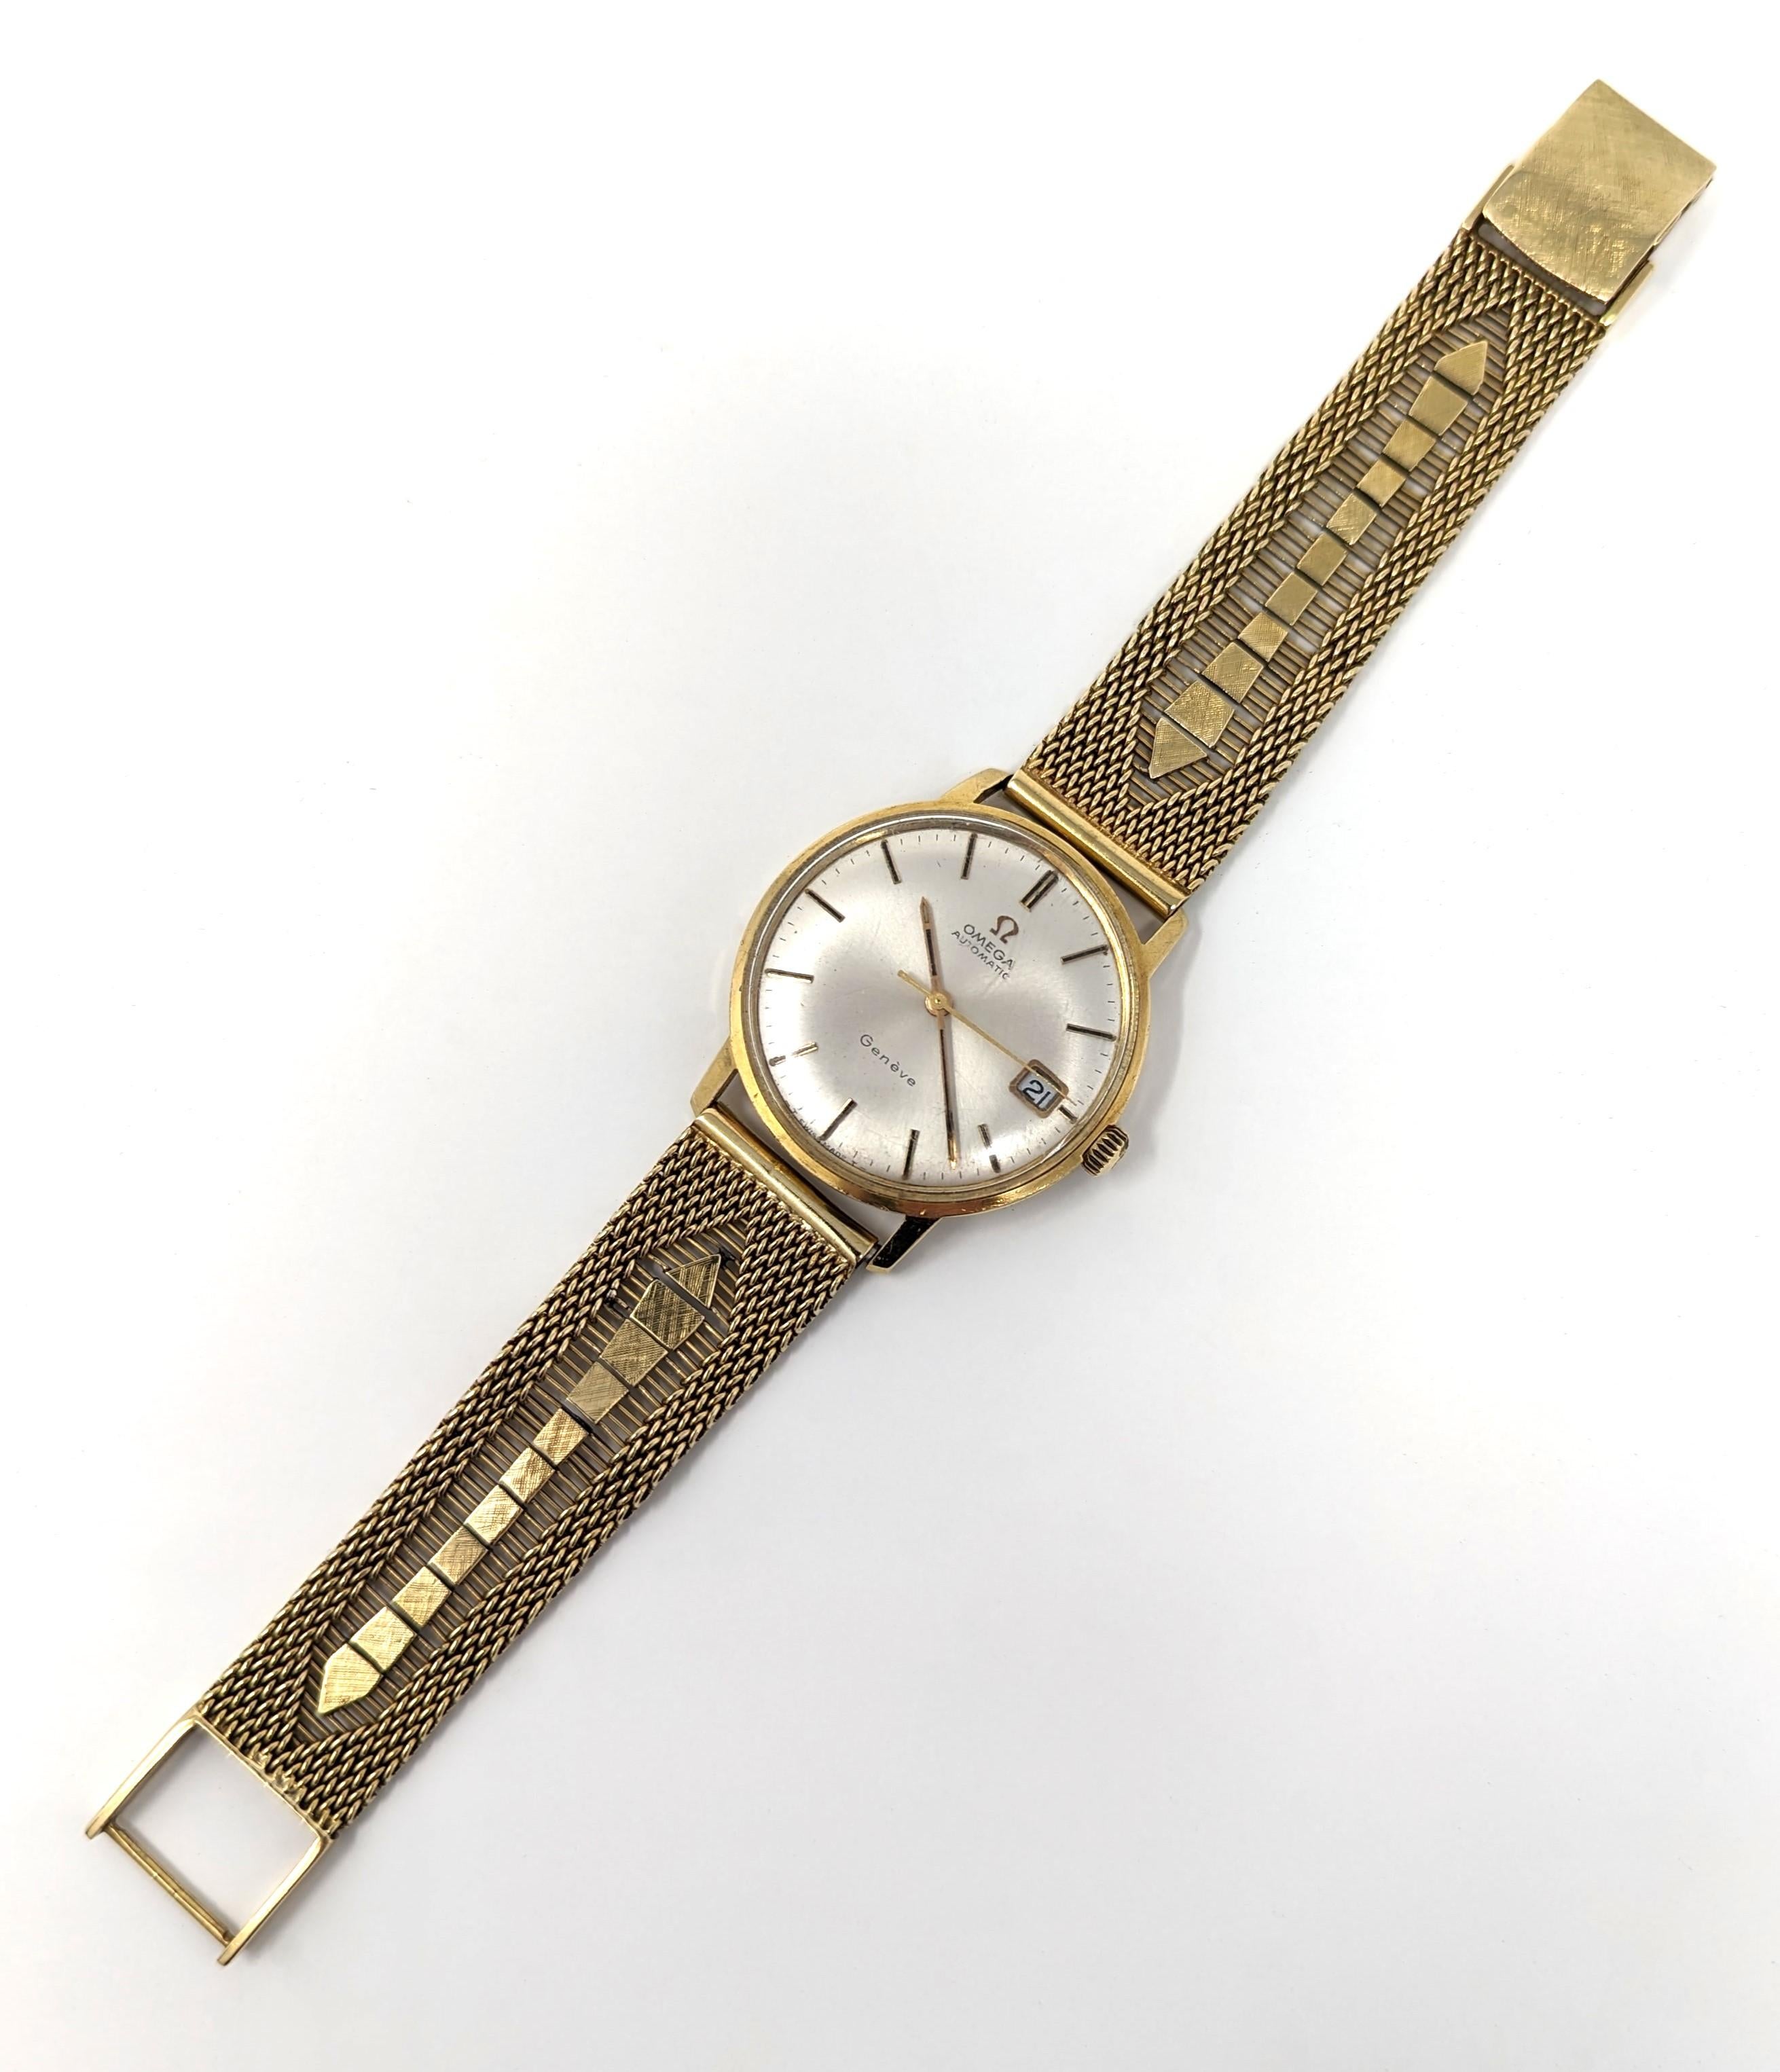 Superbe montre Omega Automatique vintage, fabriquée à Genève en Suisse, avec un superbe bracelet en or jaune massif 18 carats. Le grand cadran mesure 1,3 pouce de diamètre (lunette comprise) pour 10 mm de profondeur. Le bracelet mesure 7,5 pouces